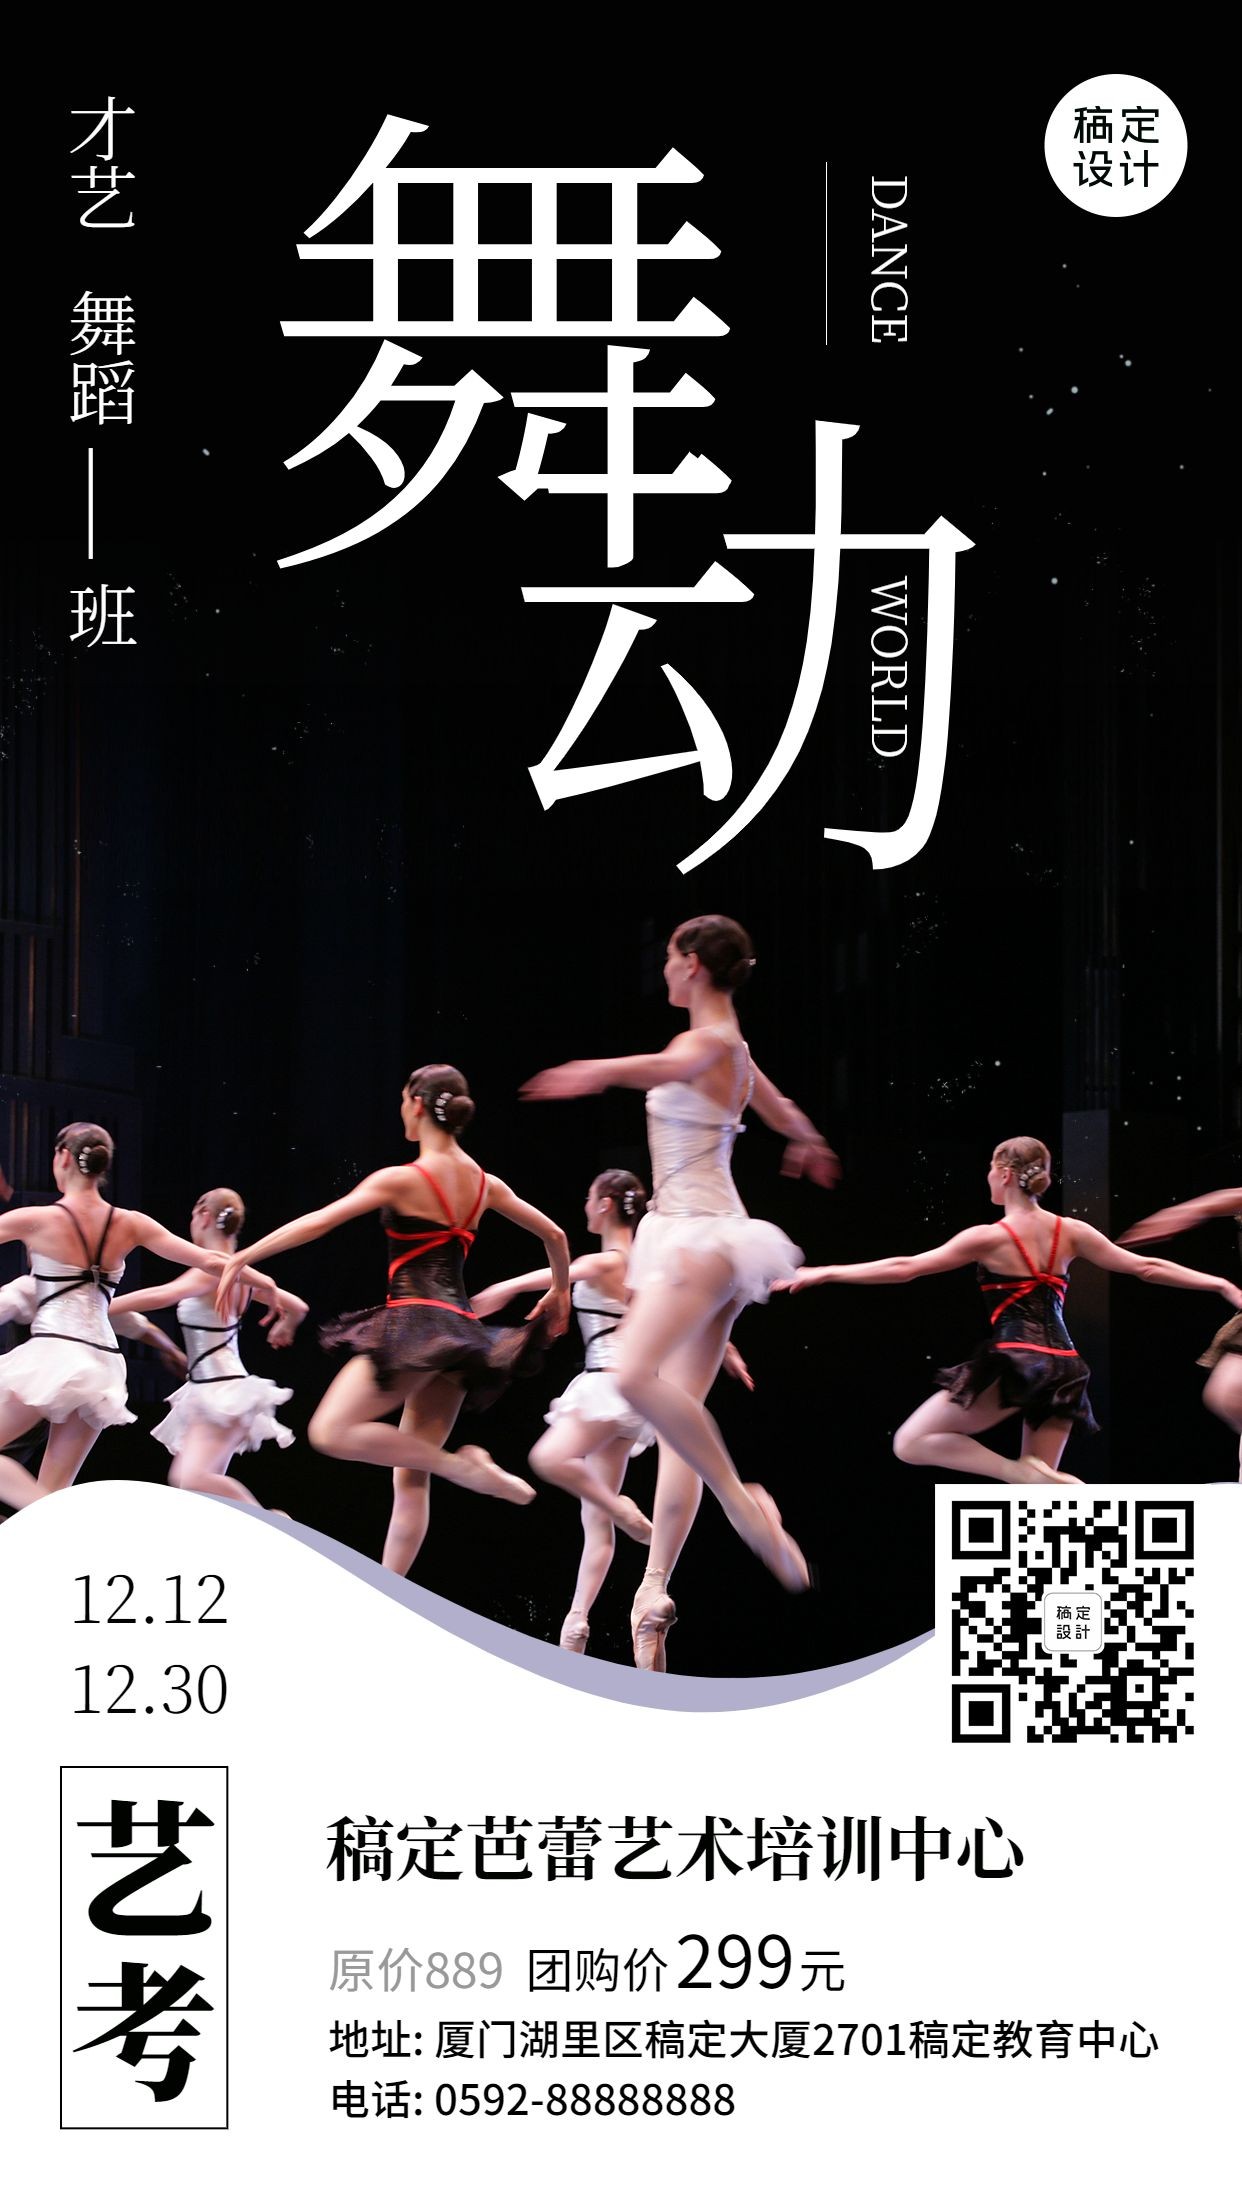 芭蕾舞蹈培训招生手机海报预览效果